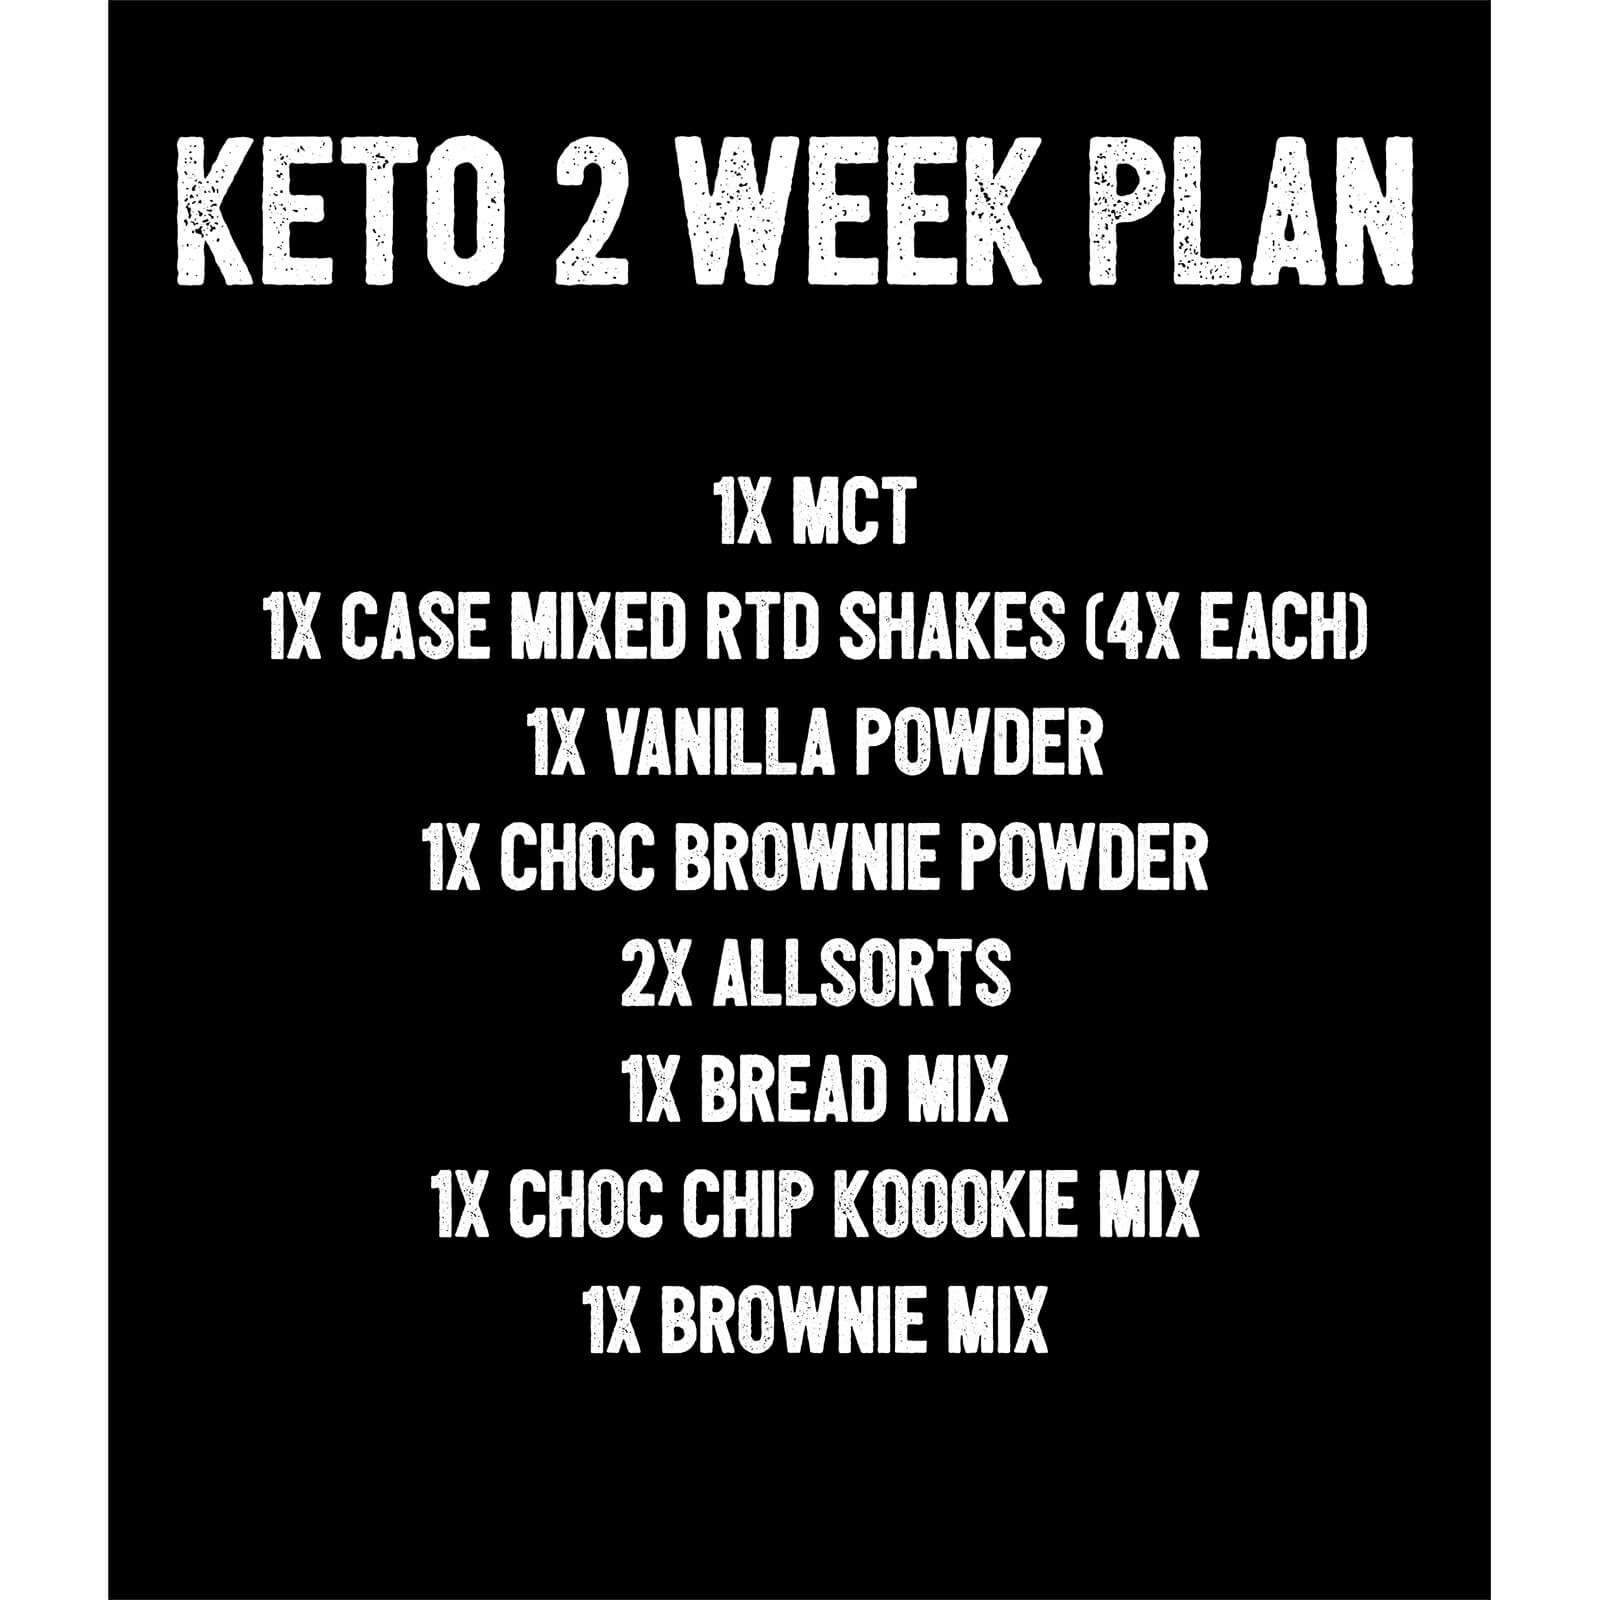 keto 2 week plan, 1x mct 1x case mixed rtd shakes (4x each)1x vanilla powder 2x allsorts 1x bread mix 1x choc chip koookie mix 1x brownie mix